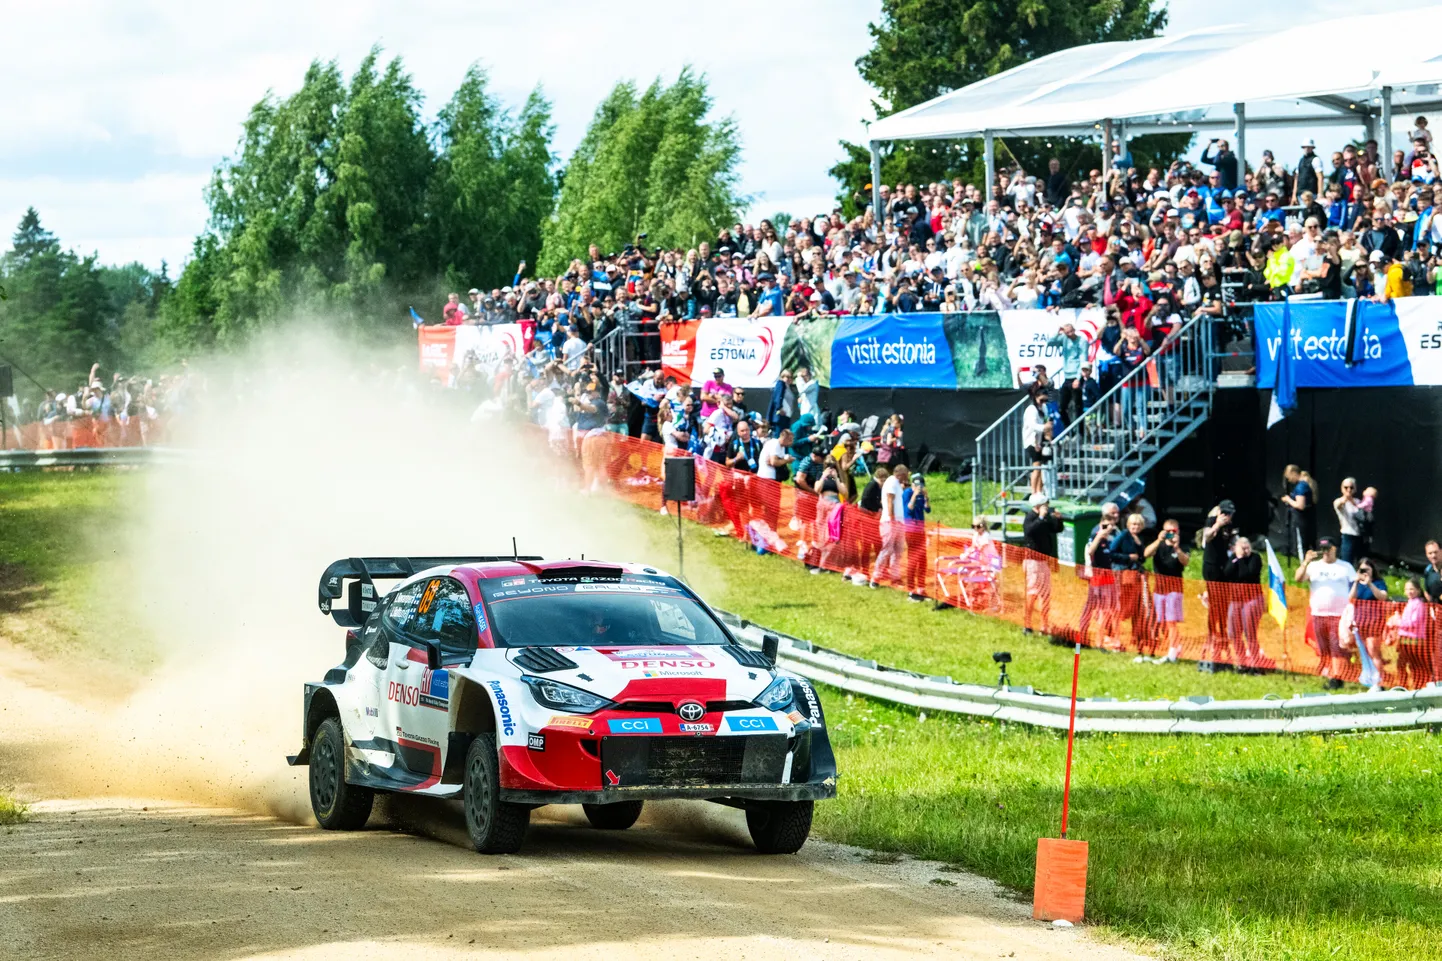 Kalle Rovanperä võitis Rally Estonia aastatel 2021 kuni 2023, kui see kuulus WRC-kalendrisse. Tänavu on Eesti suurim rallivõistlus osa EM-sarjast, kuid 2025. aastal kerkitakse jälle kõrgeimasse klassi. Mis saab aga edasi?